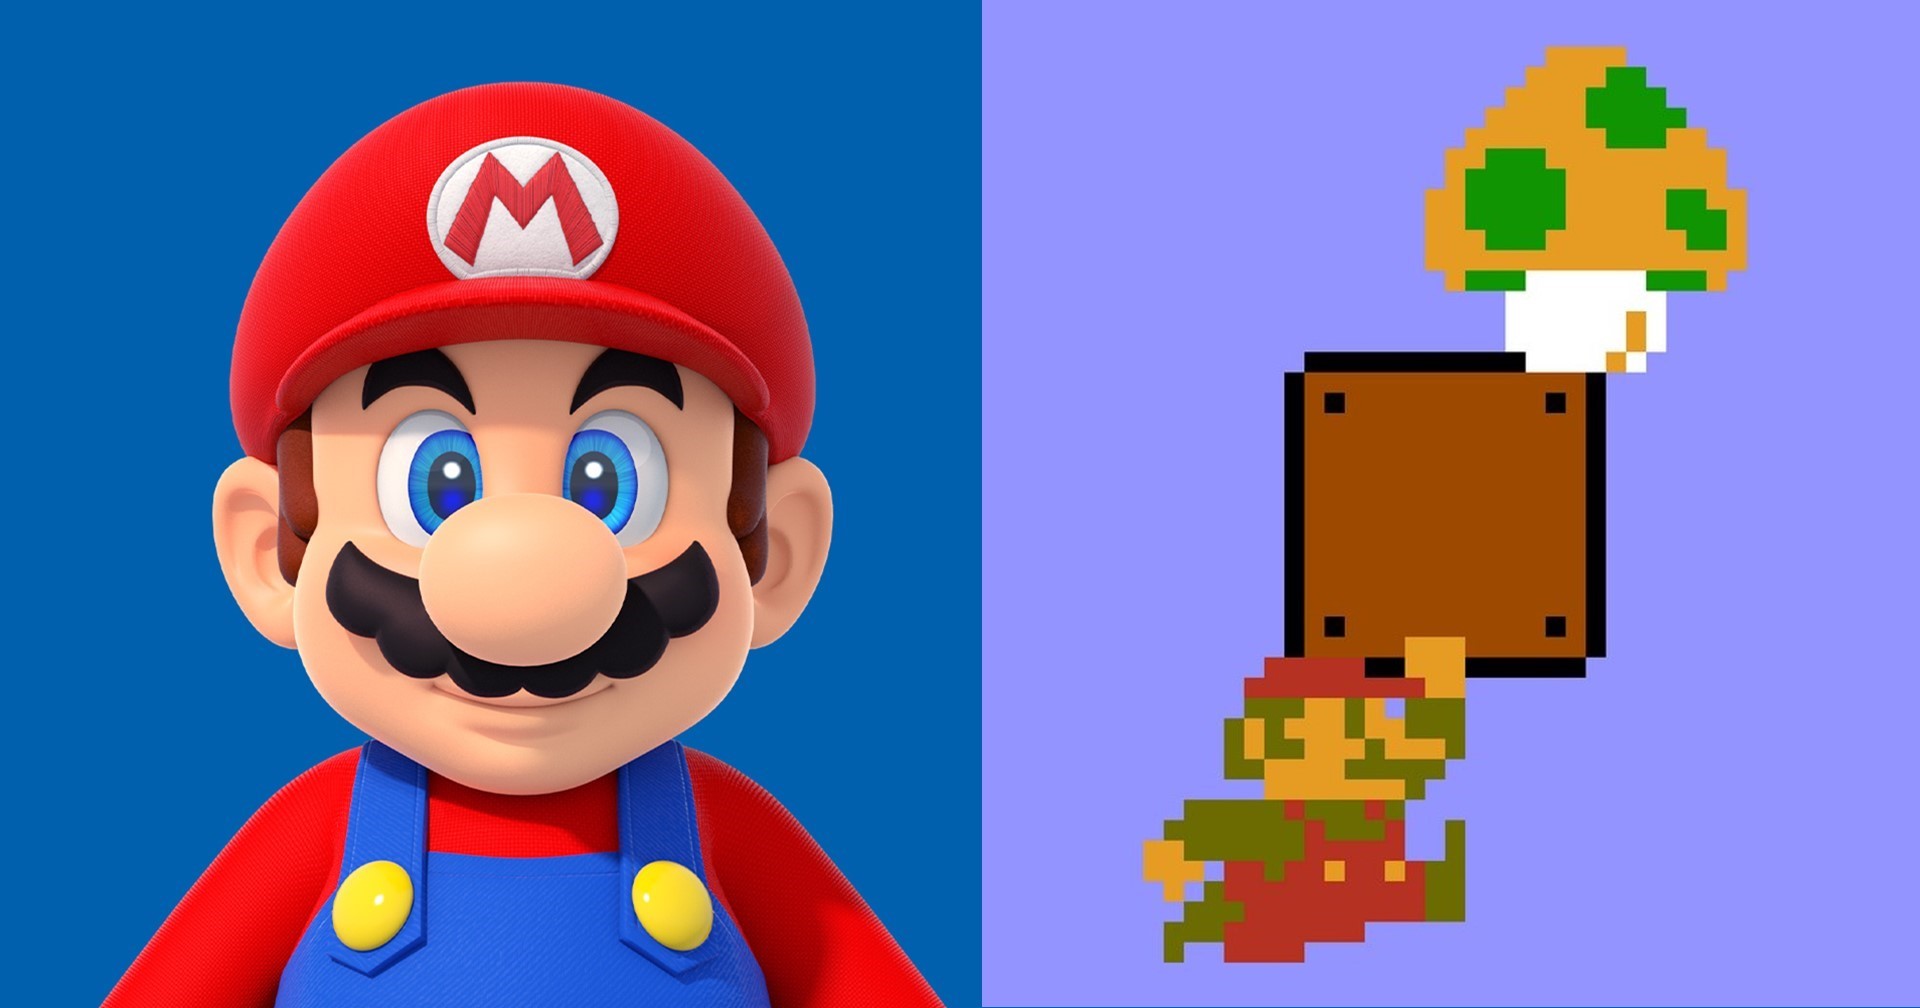 พบทฤษฎี ต้นกำเนิดเห็ด 1-UP ในเกม Super Mario ที่ชวนหลอน